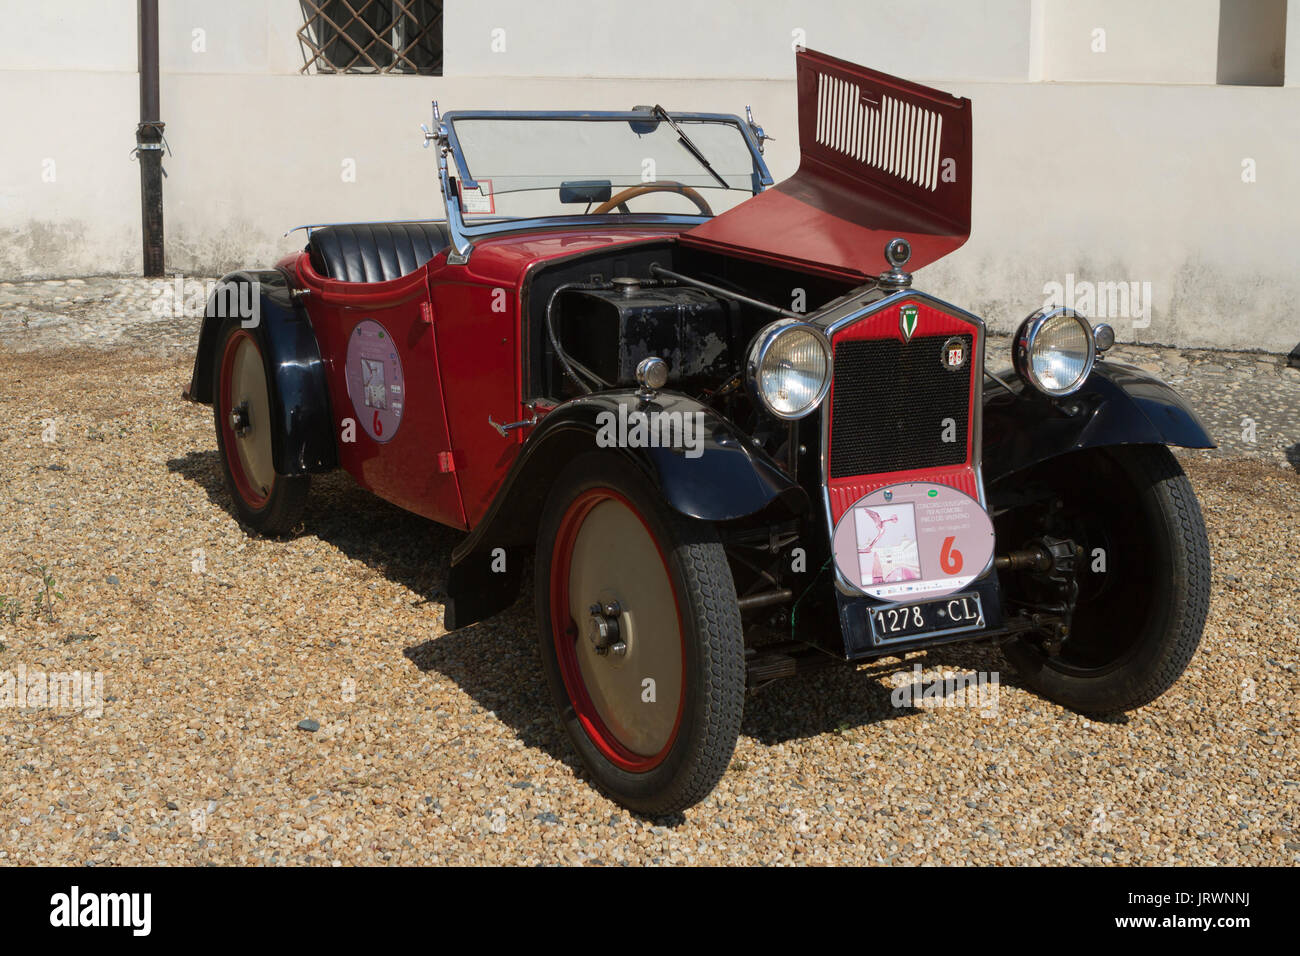 1931 DKW 580 une araignée. Voitures anciennes et des voitures en exposition à Turin pendant Parco Valentino car show. Banque D'Images